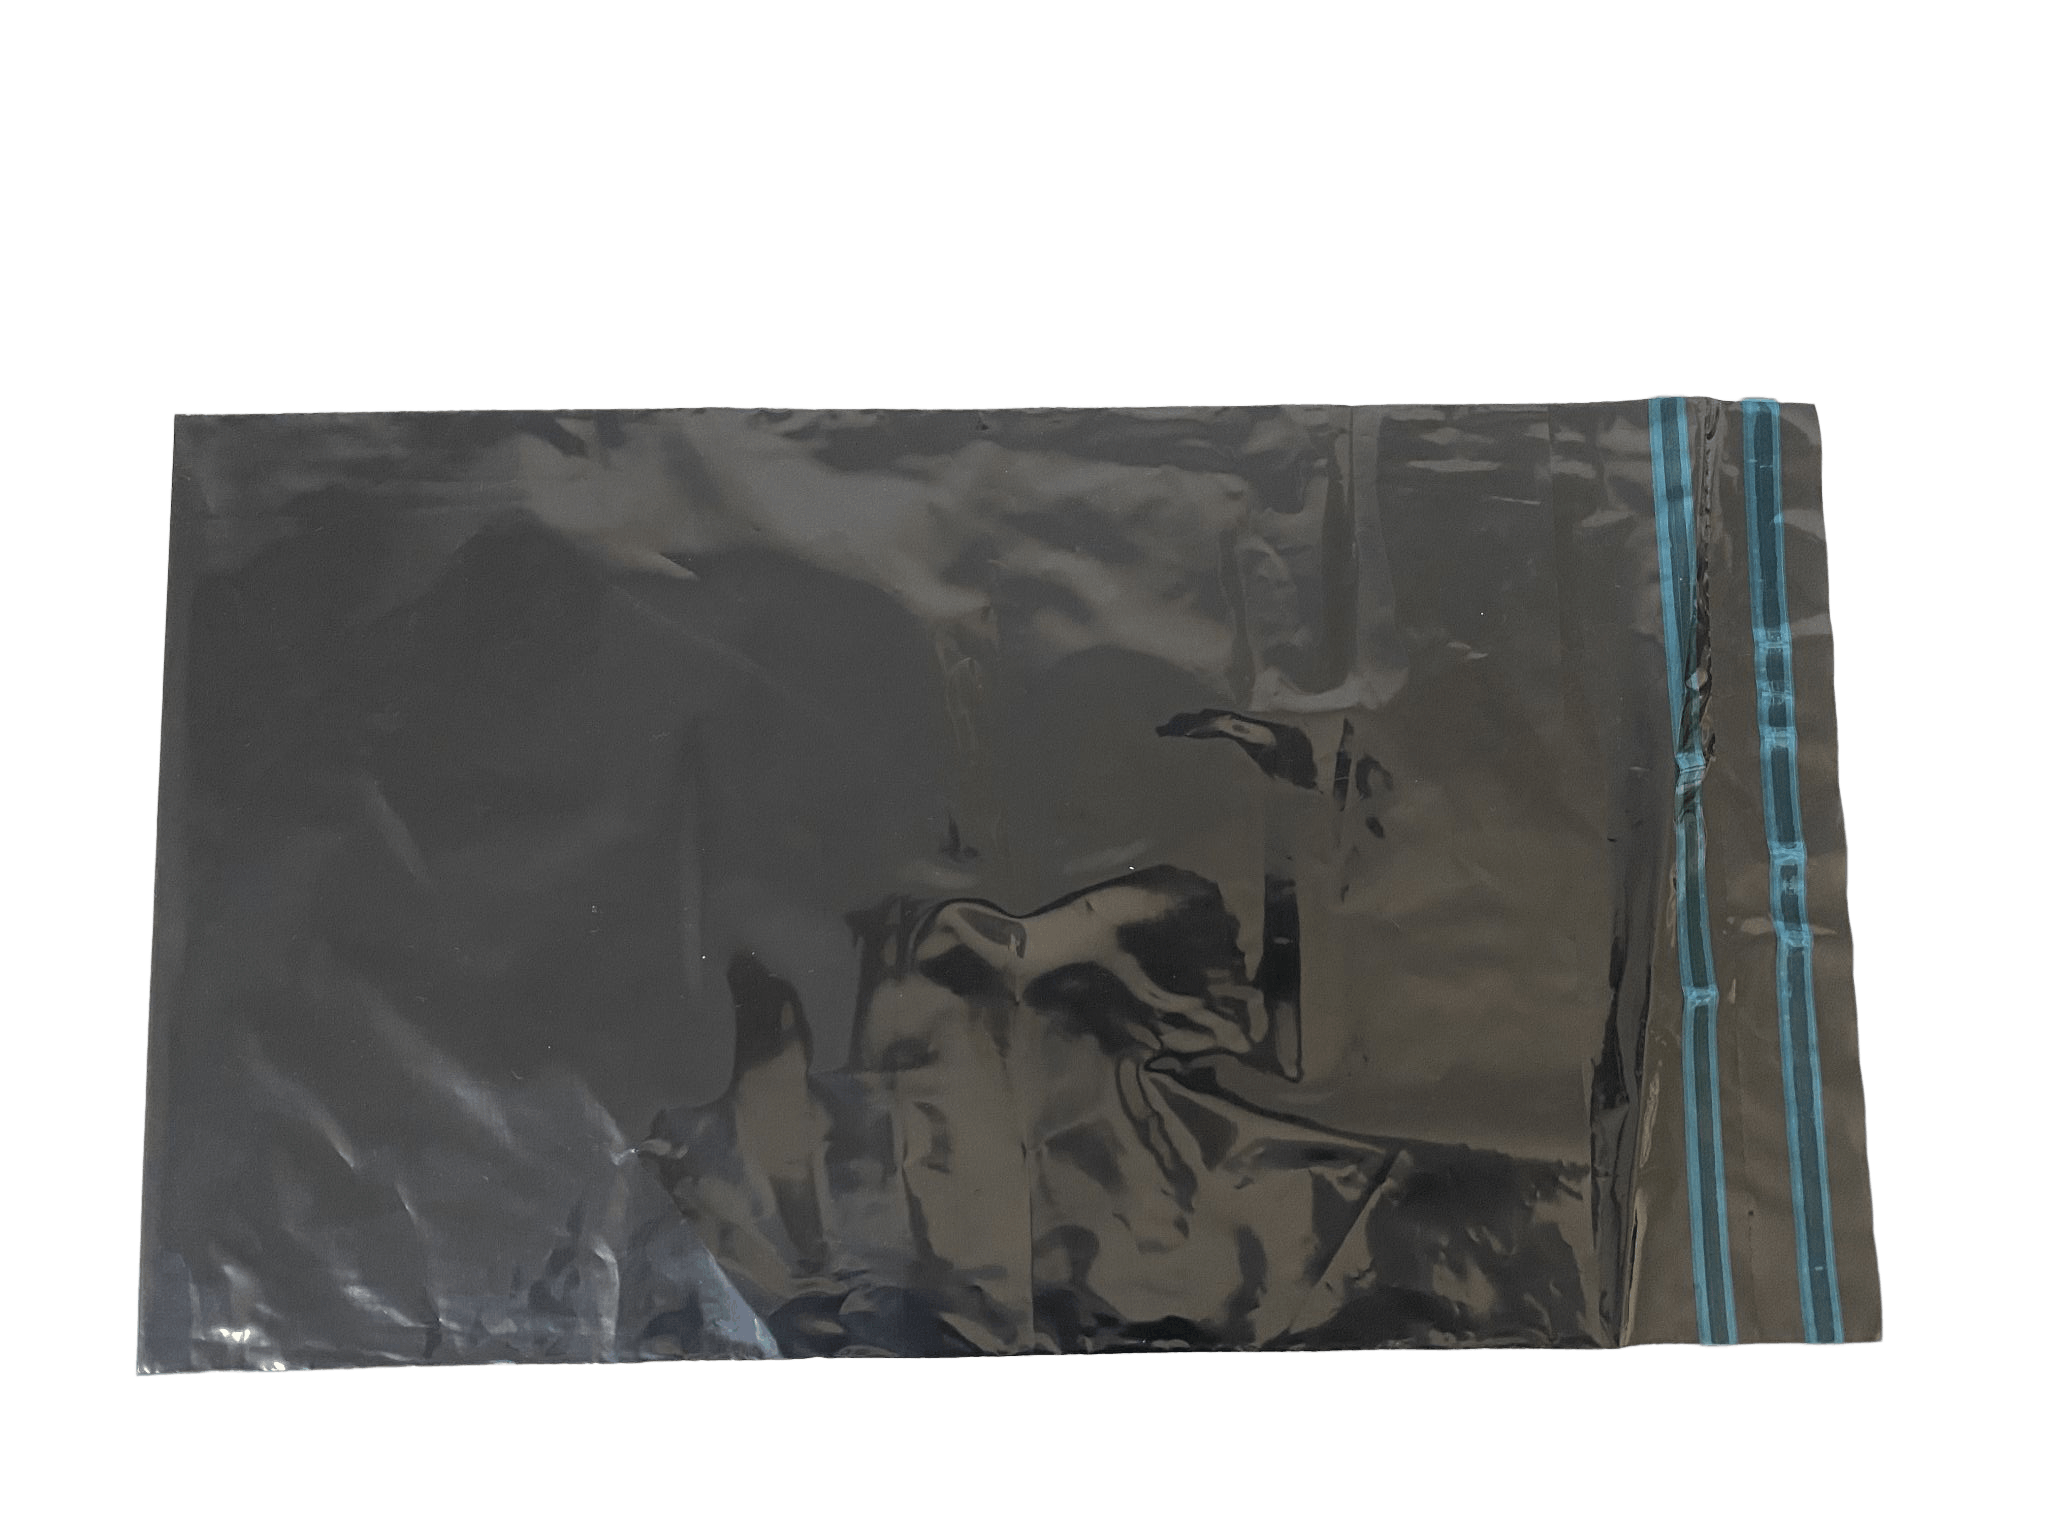 pochette plastique expédition a rabat adhesif noire x800 pak emballages